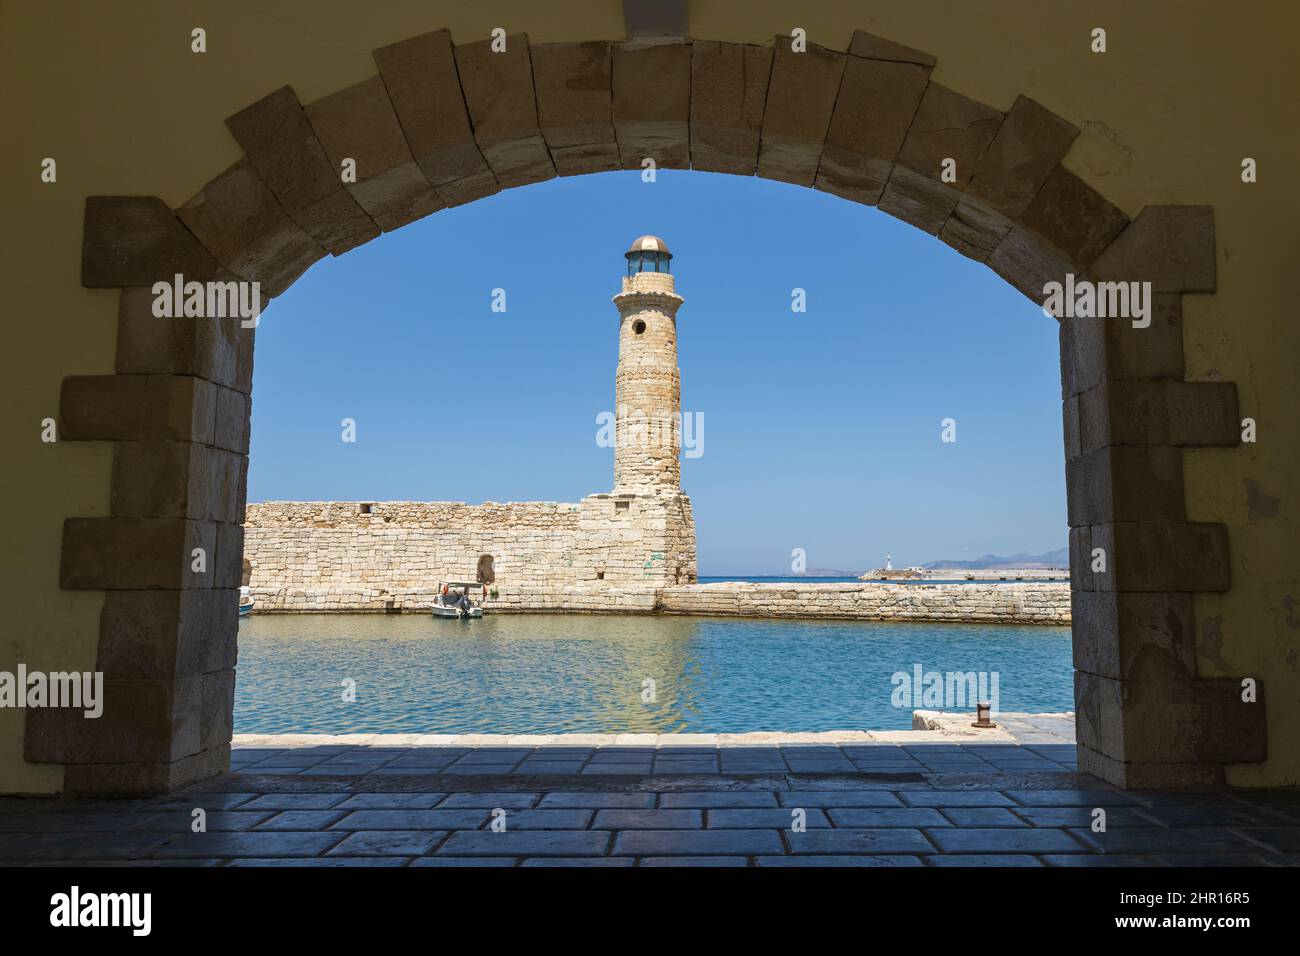 Vieux port de Rethimno à travers un cadre d'une porte, Crète, Grèce Banque D'Images